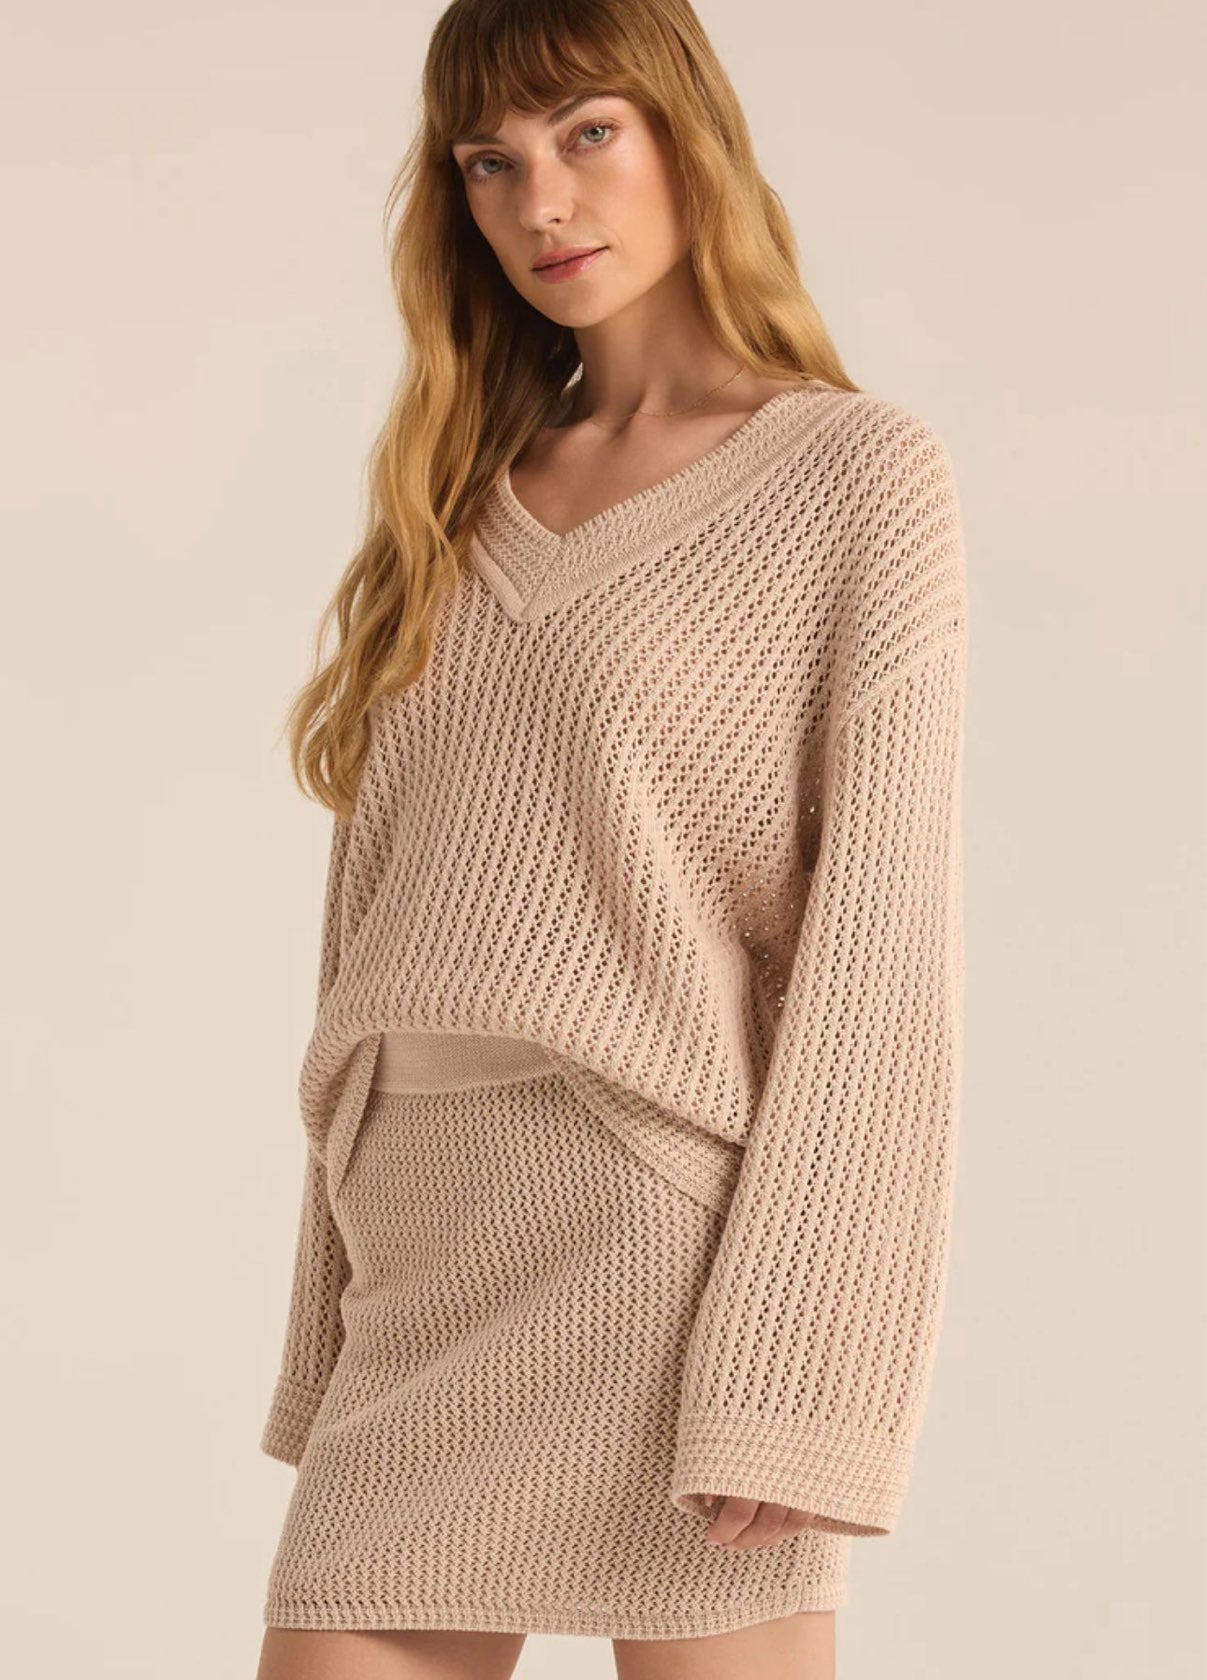 Kiami Crochet Sweater | Z Supply